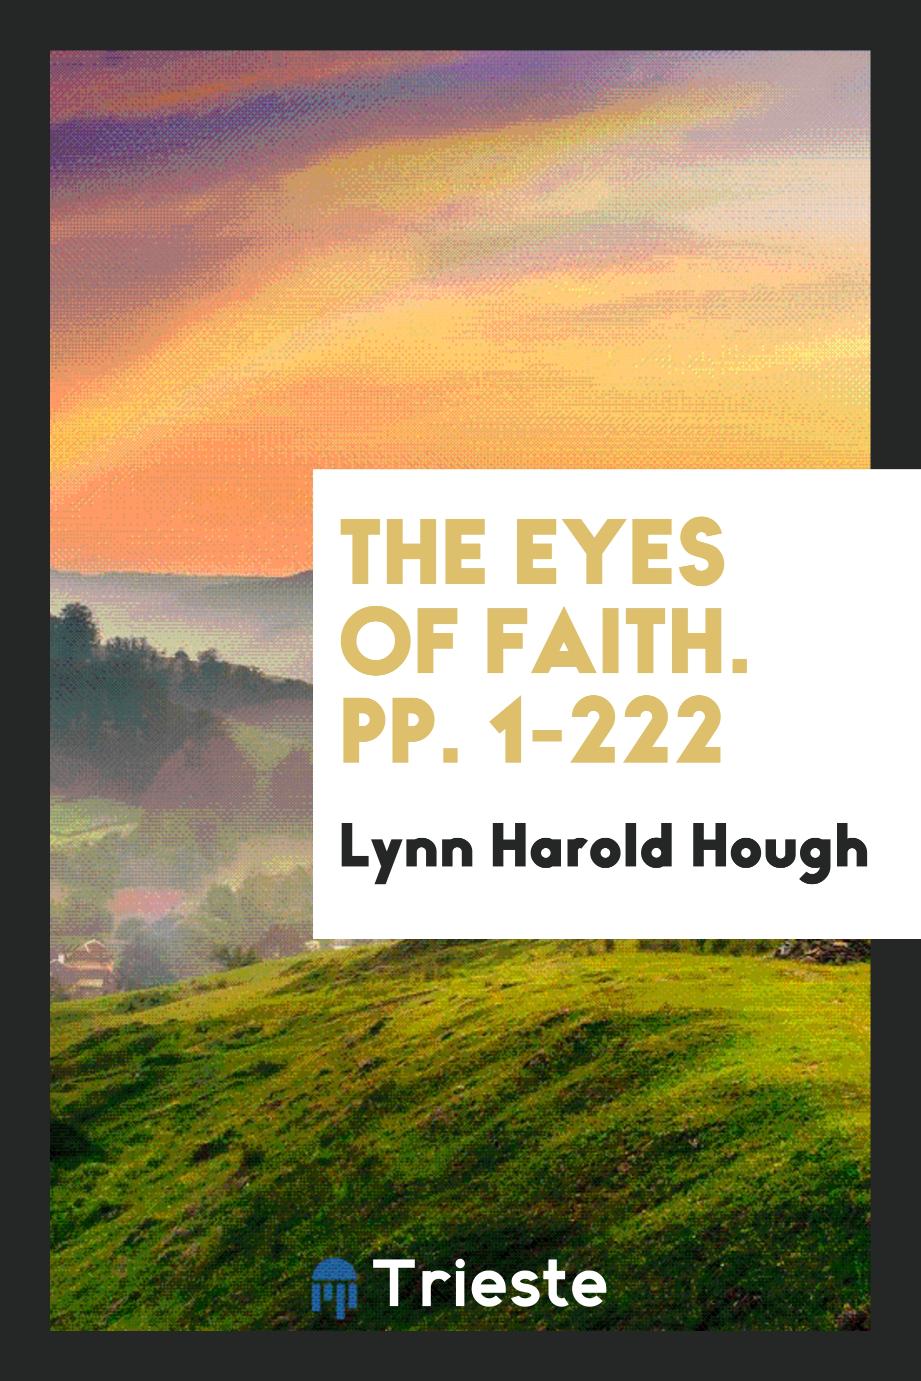 The Eyes of Faith. pp. 1-222